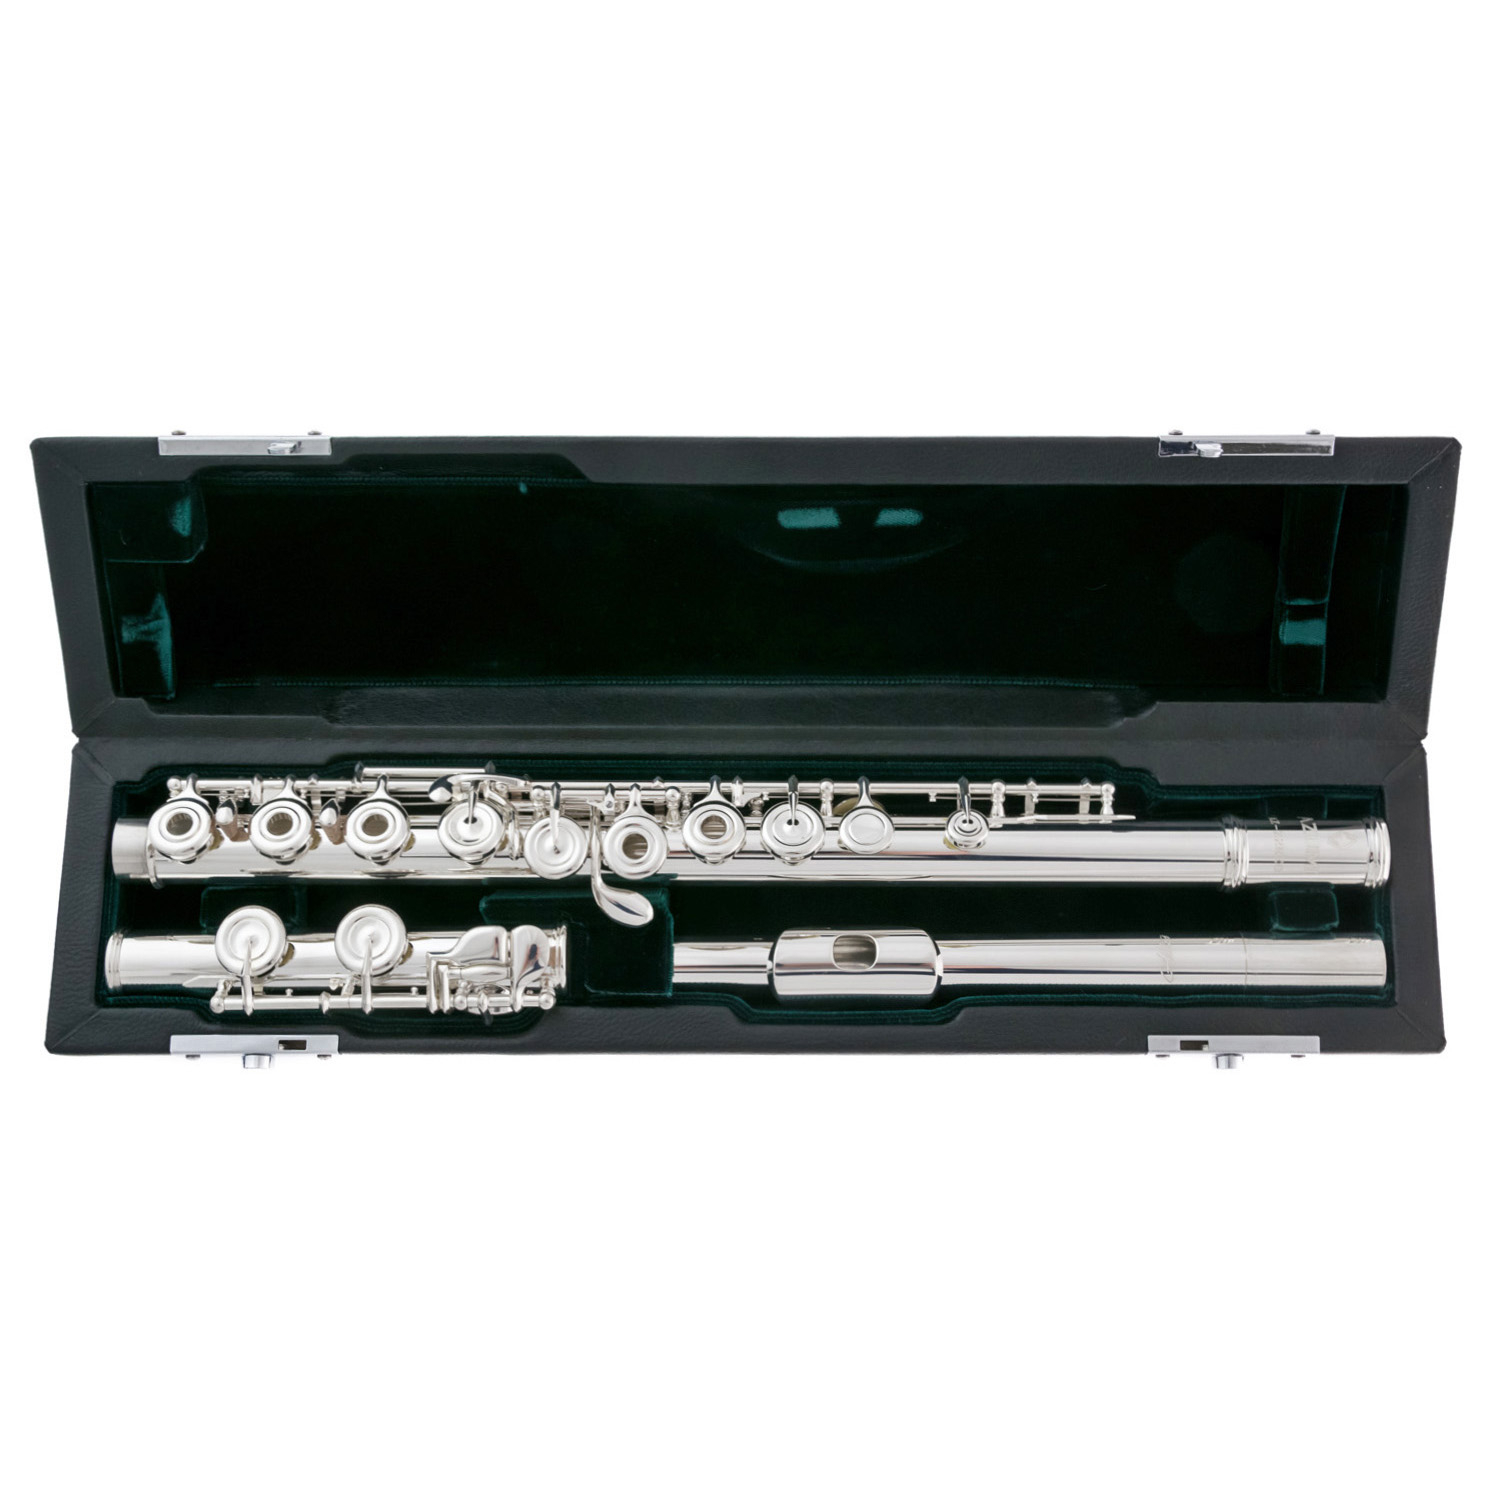 Azumi Flute - AZ Z3 CE